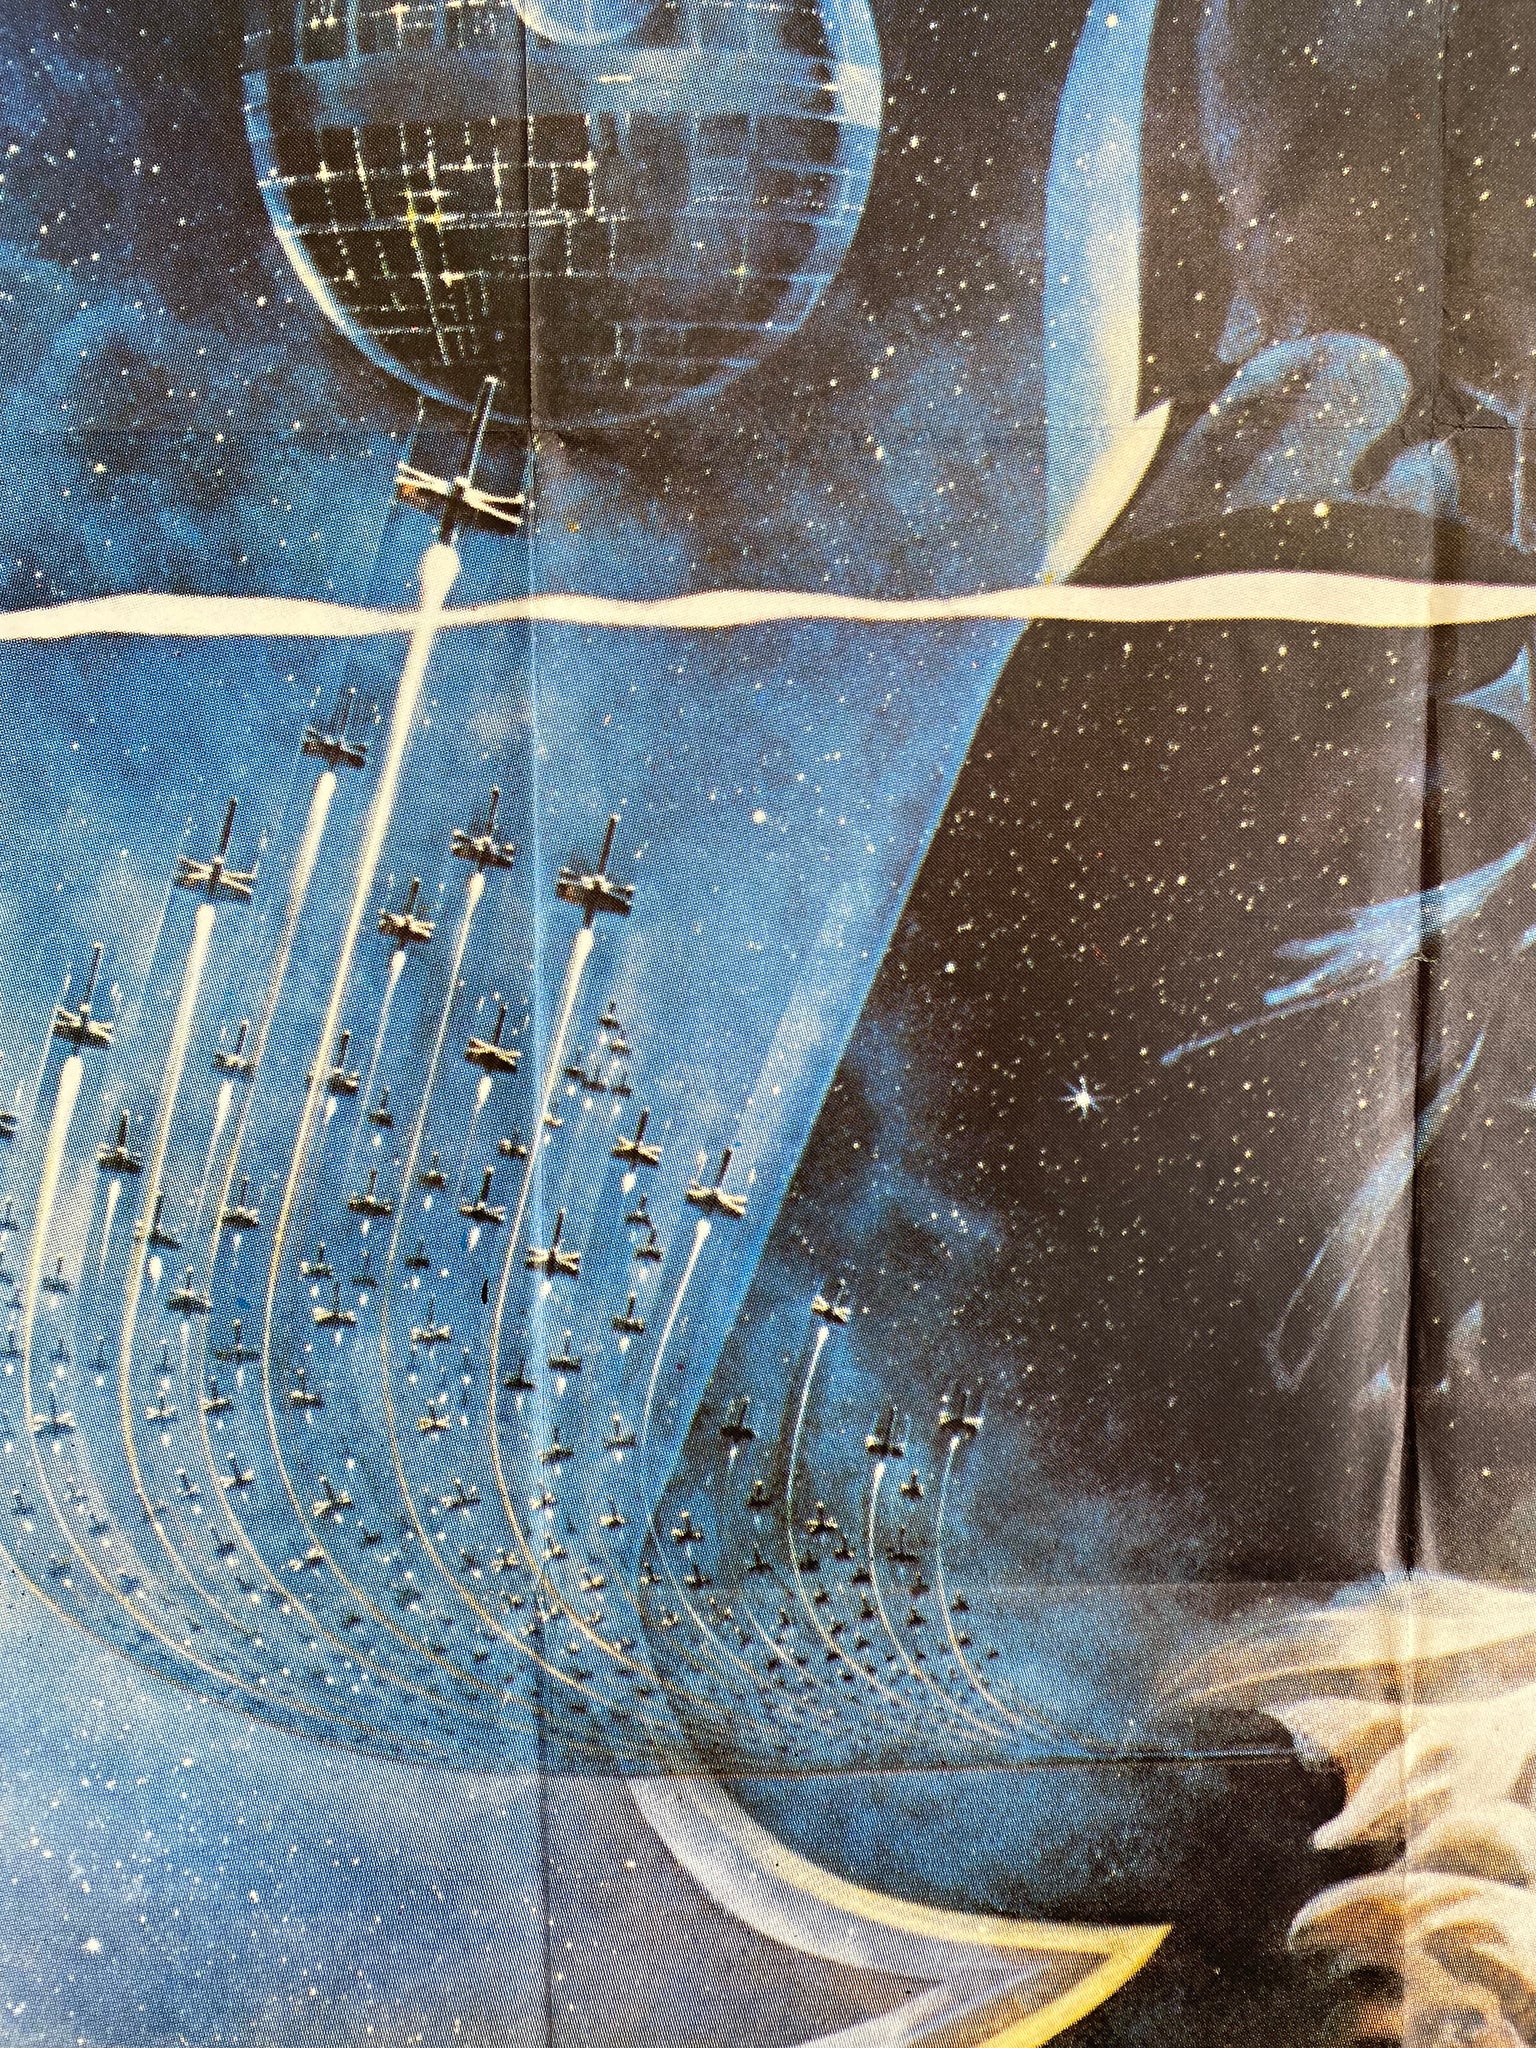 Affiche Cinéma Star Wars Un Nouvel Espoir de 1977. 